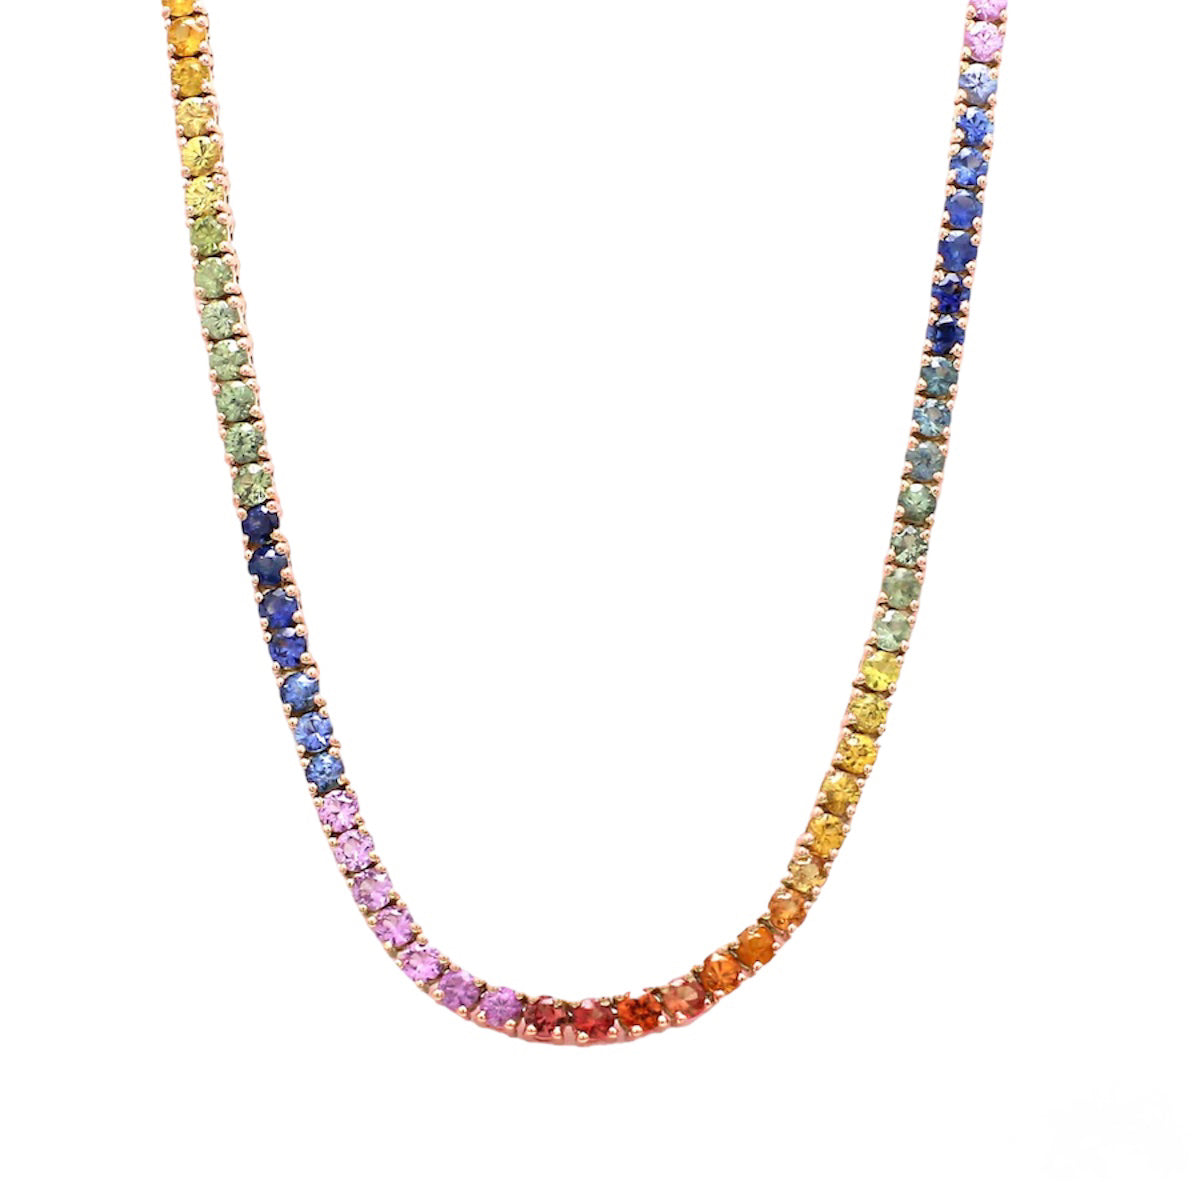 collana girocollo in argento 925 anallergica con zirconi colorati color arcobaleno